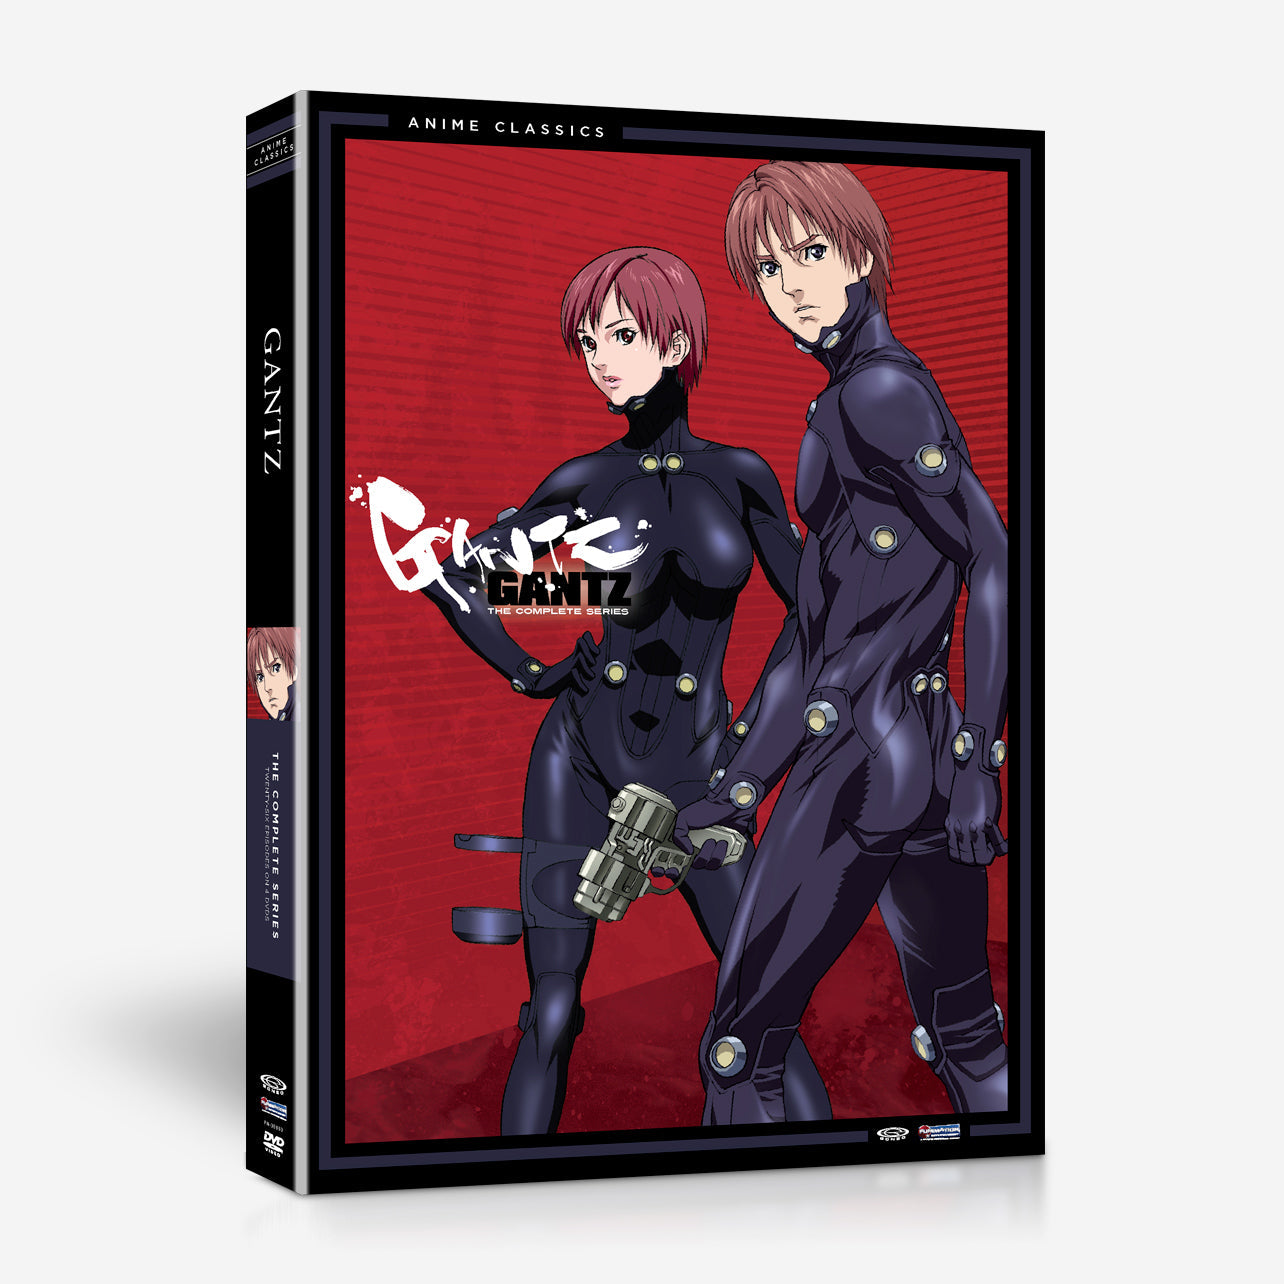 Pef Raak verstrikt het beleid GANTZ - The Complete Series - Anime Classics - DVD | Crunchyroll store